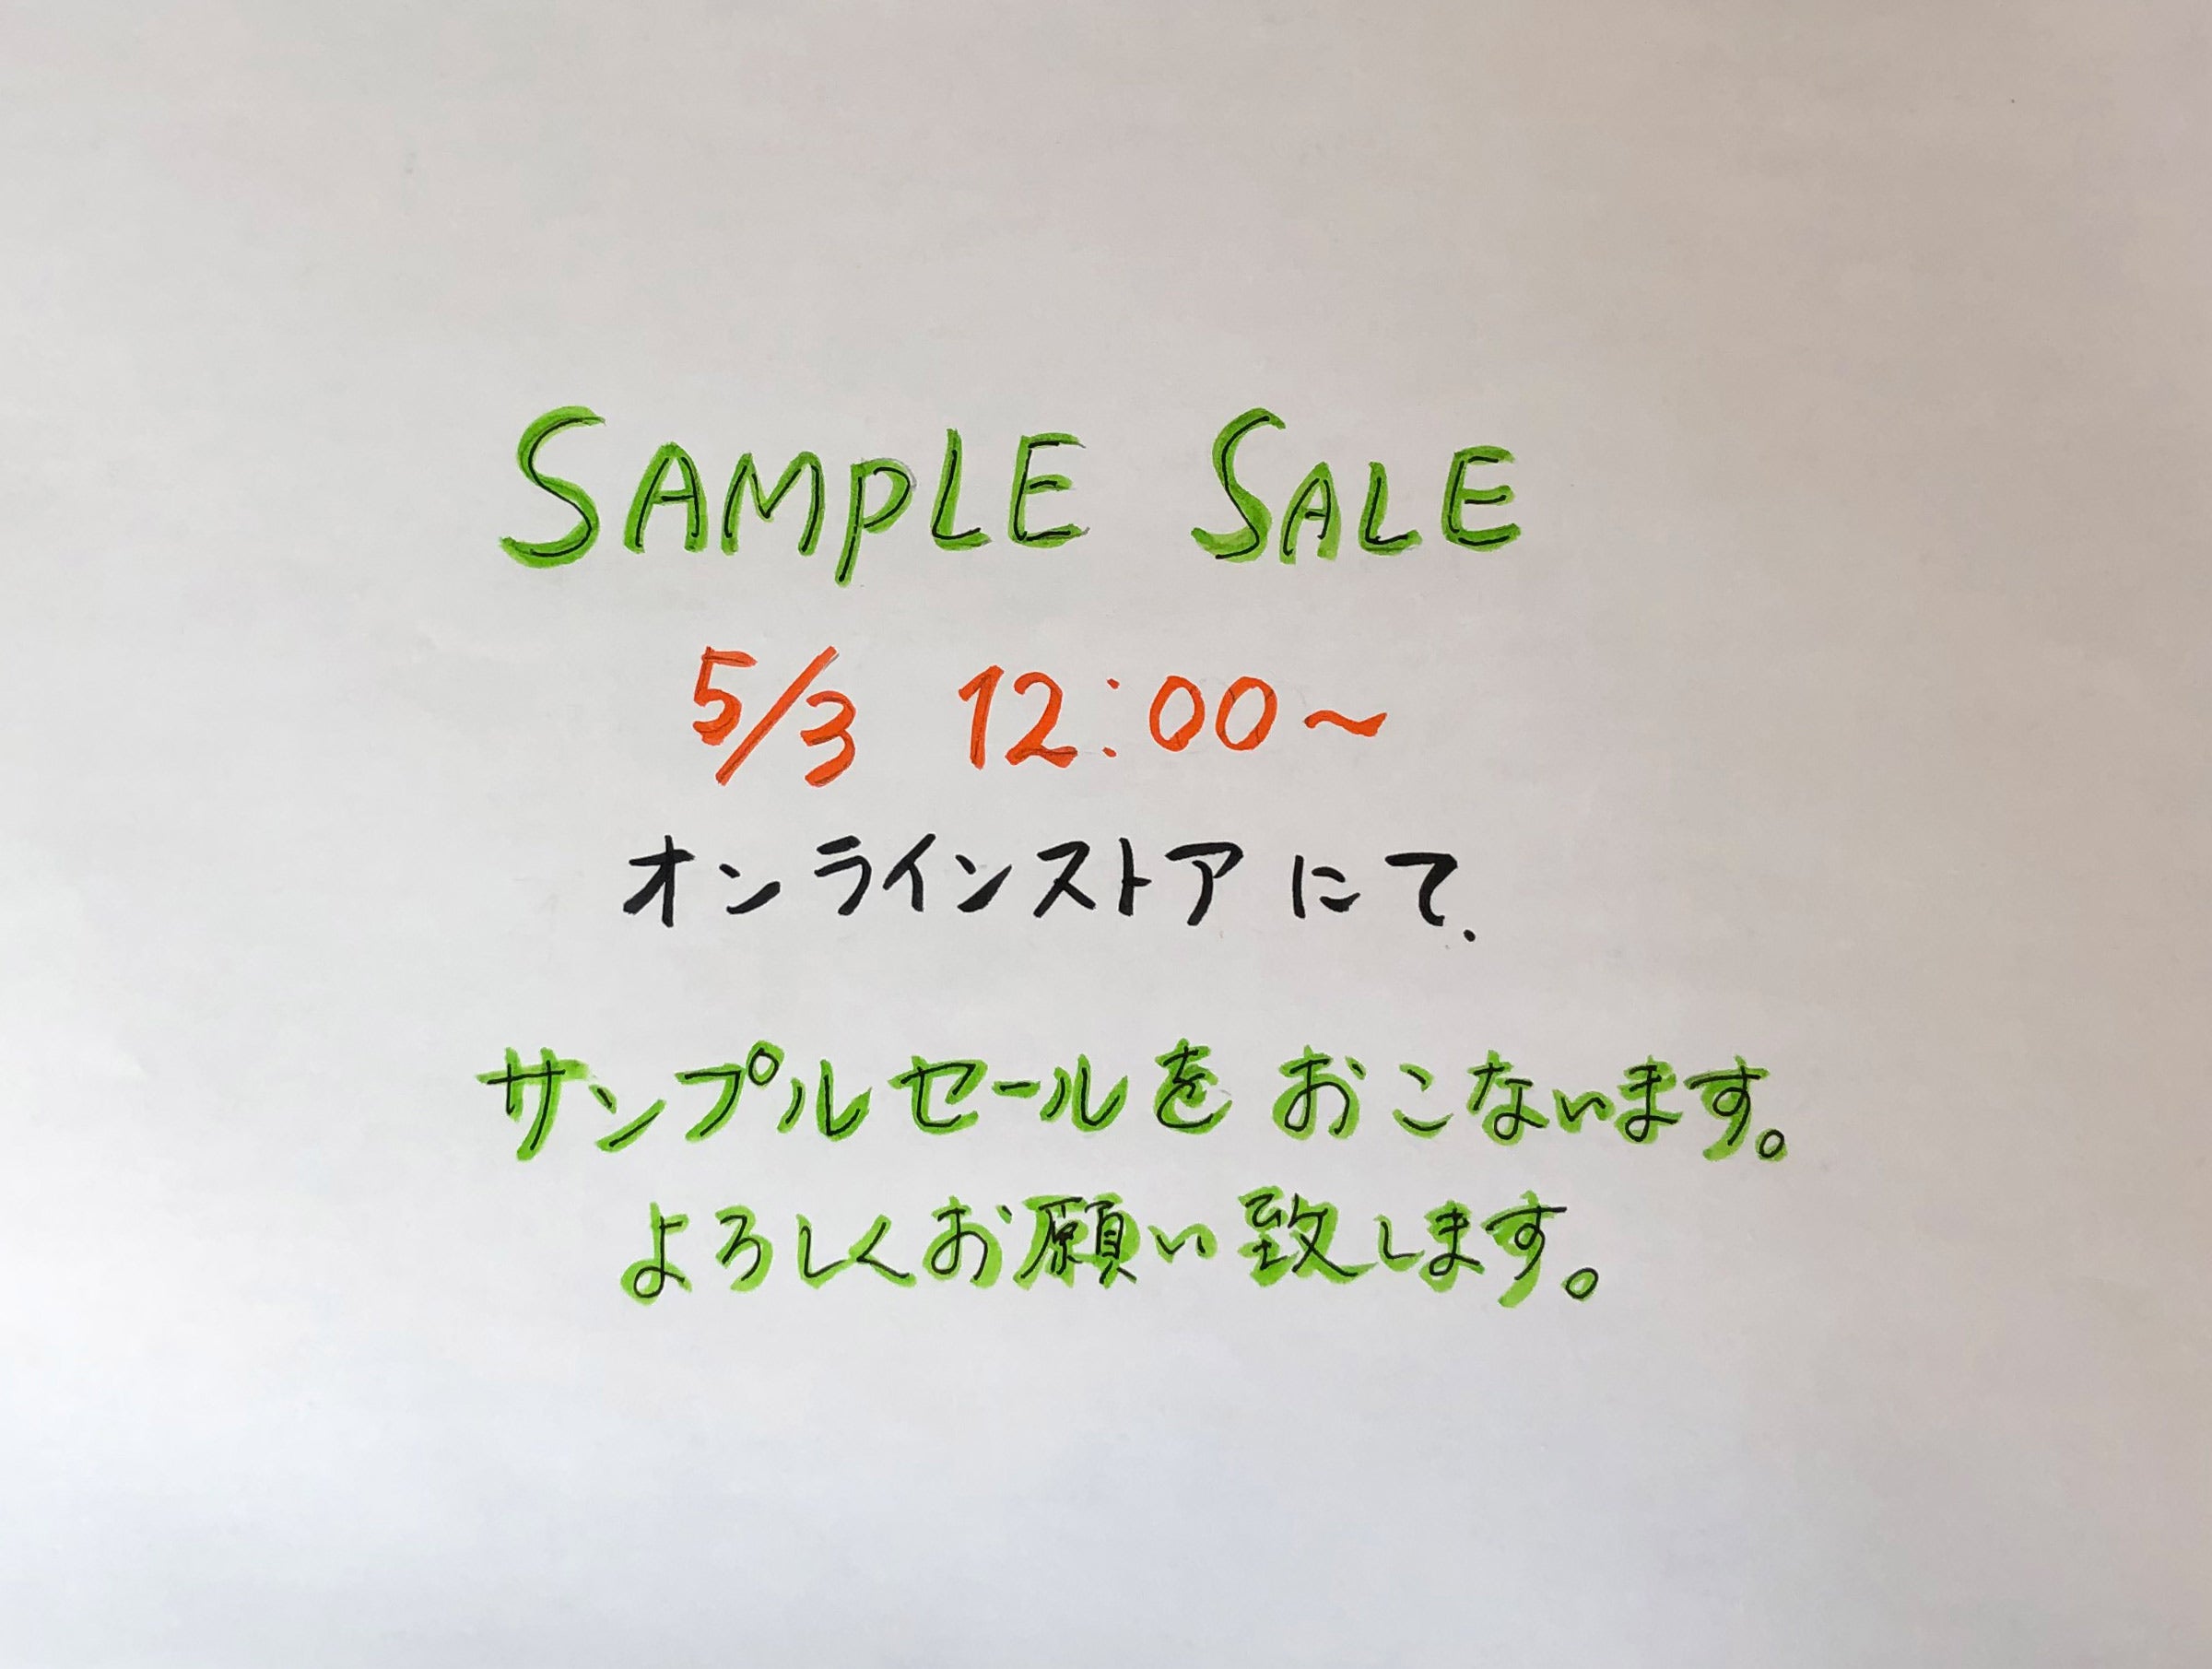 Sample Sale Information